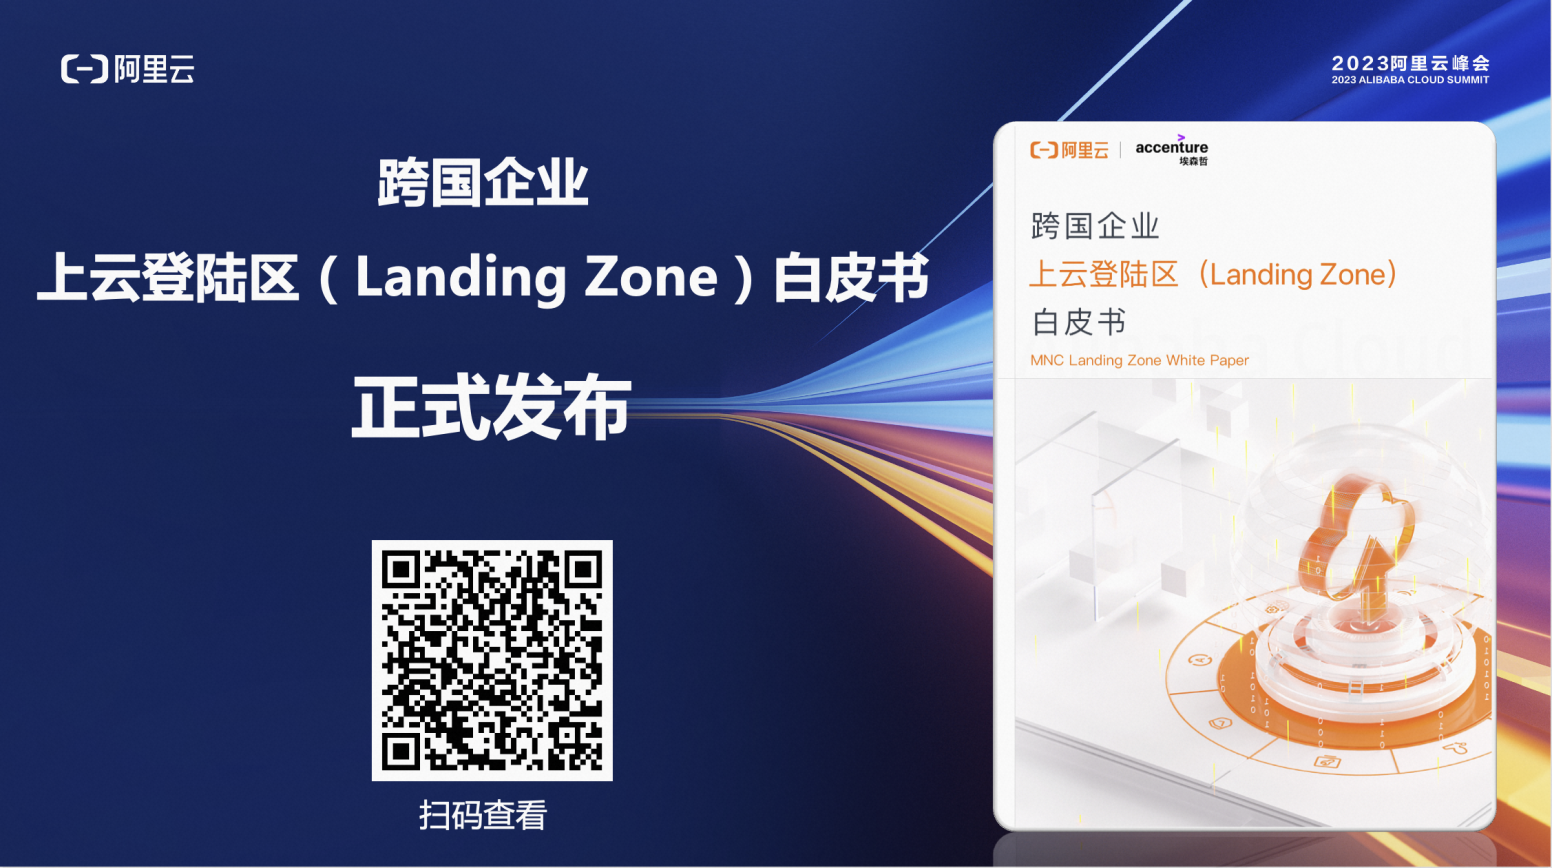 阿里云联合埃森哲正式发布《跨国企业上云登陆区（Landing Zone）白皮书》